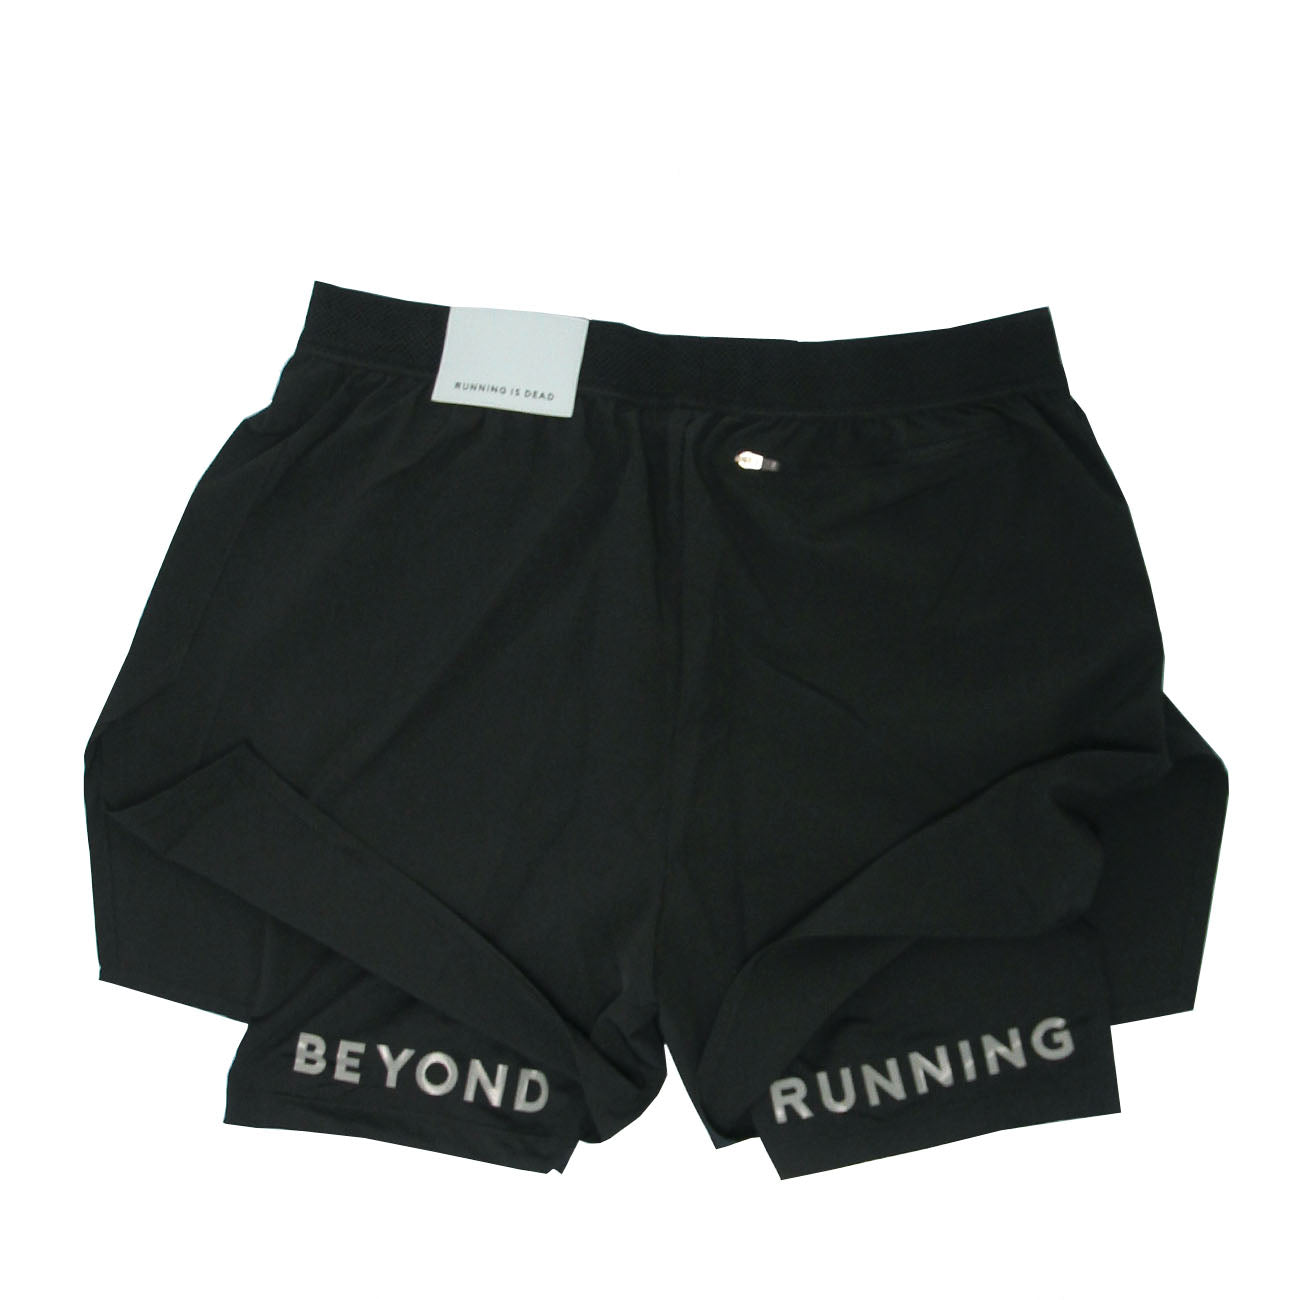 Running is Dead Running Shorts S1 B1 D3 Black